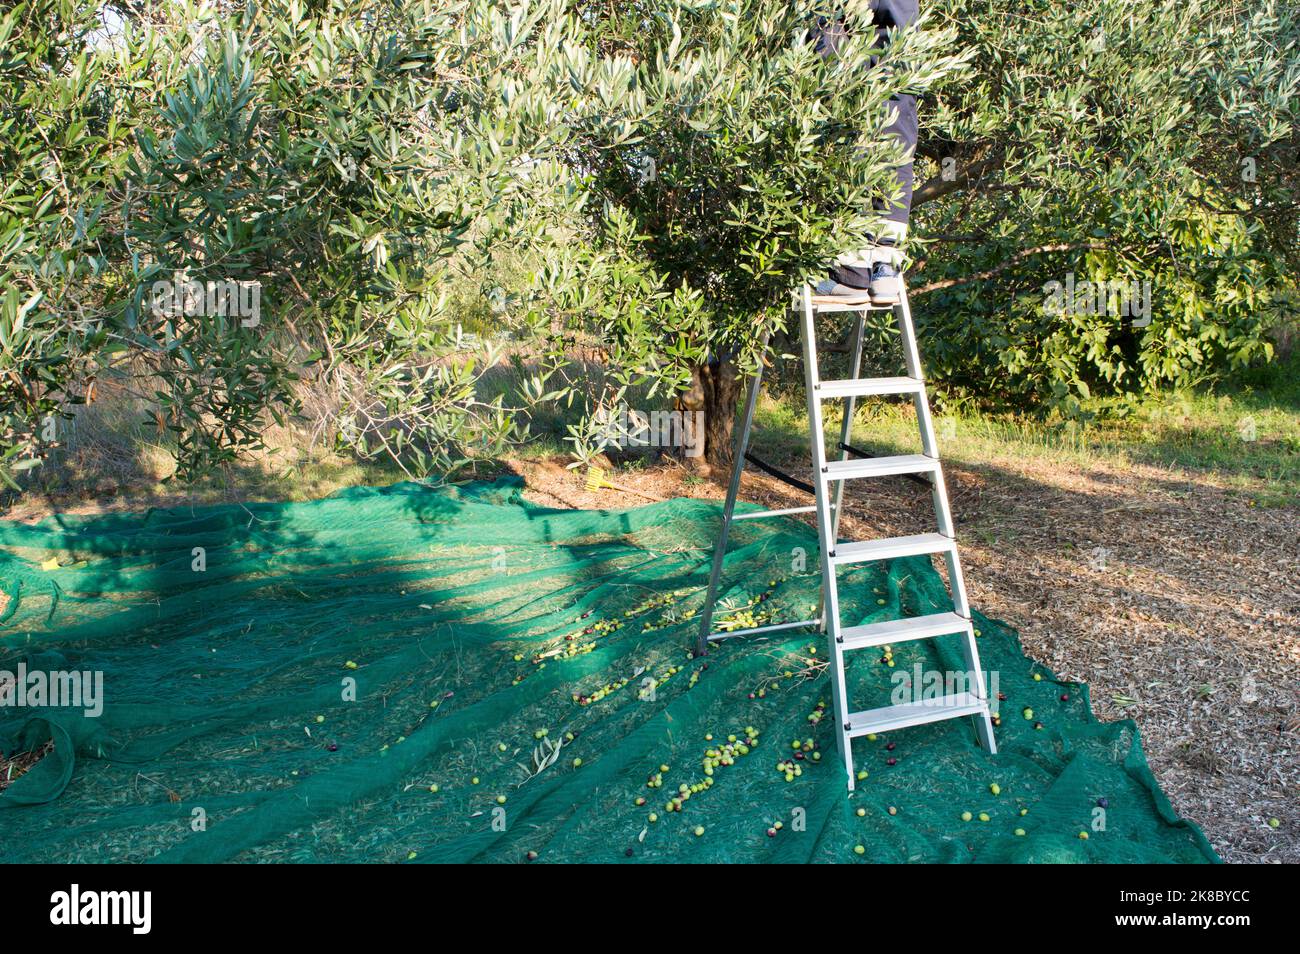 Raccolta manuale di olive, raccolta in scala e olive mature in rete verde, provenienti dalla Dalmazia, Croazia Foto Stock